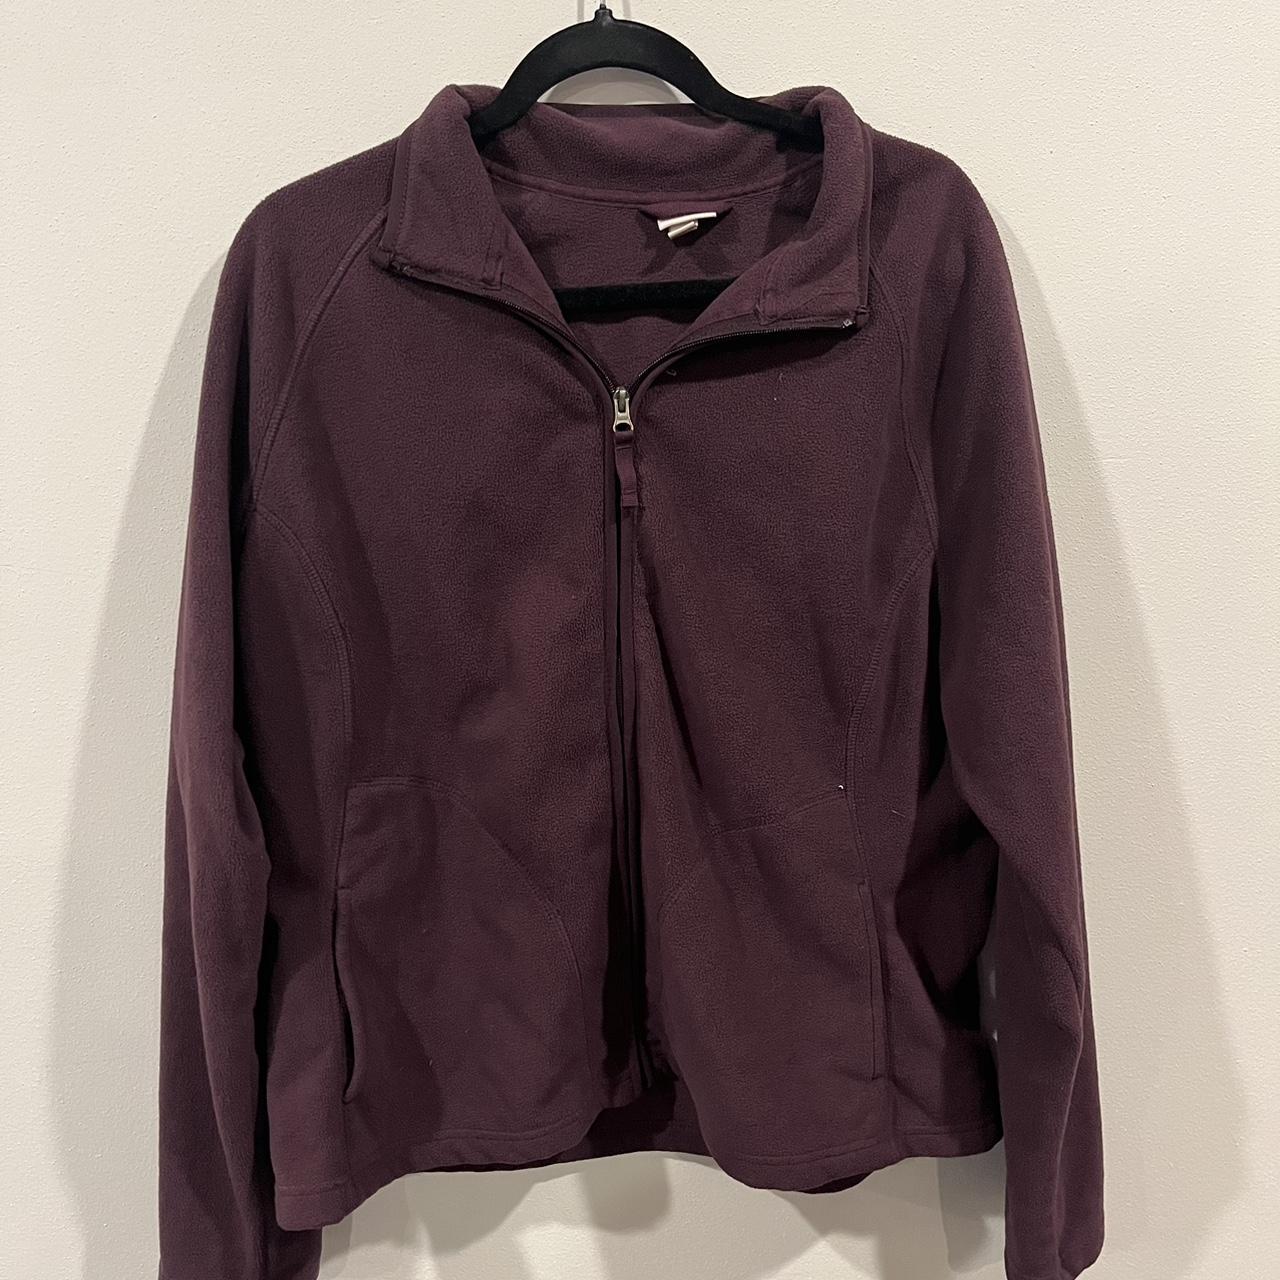 XXL purple fleece zip up jacket - Depop